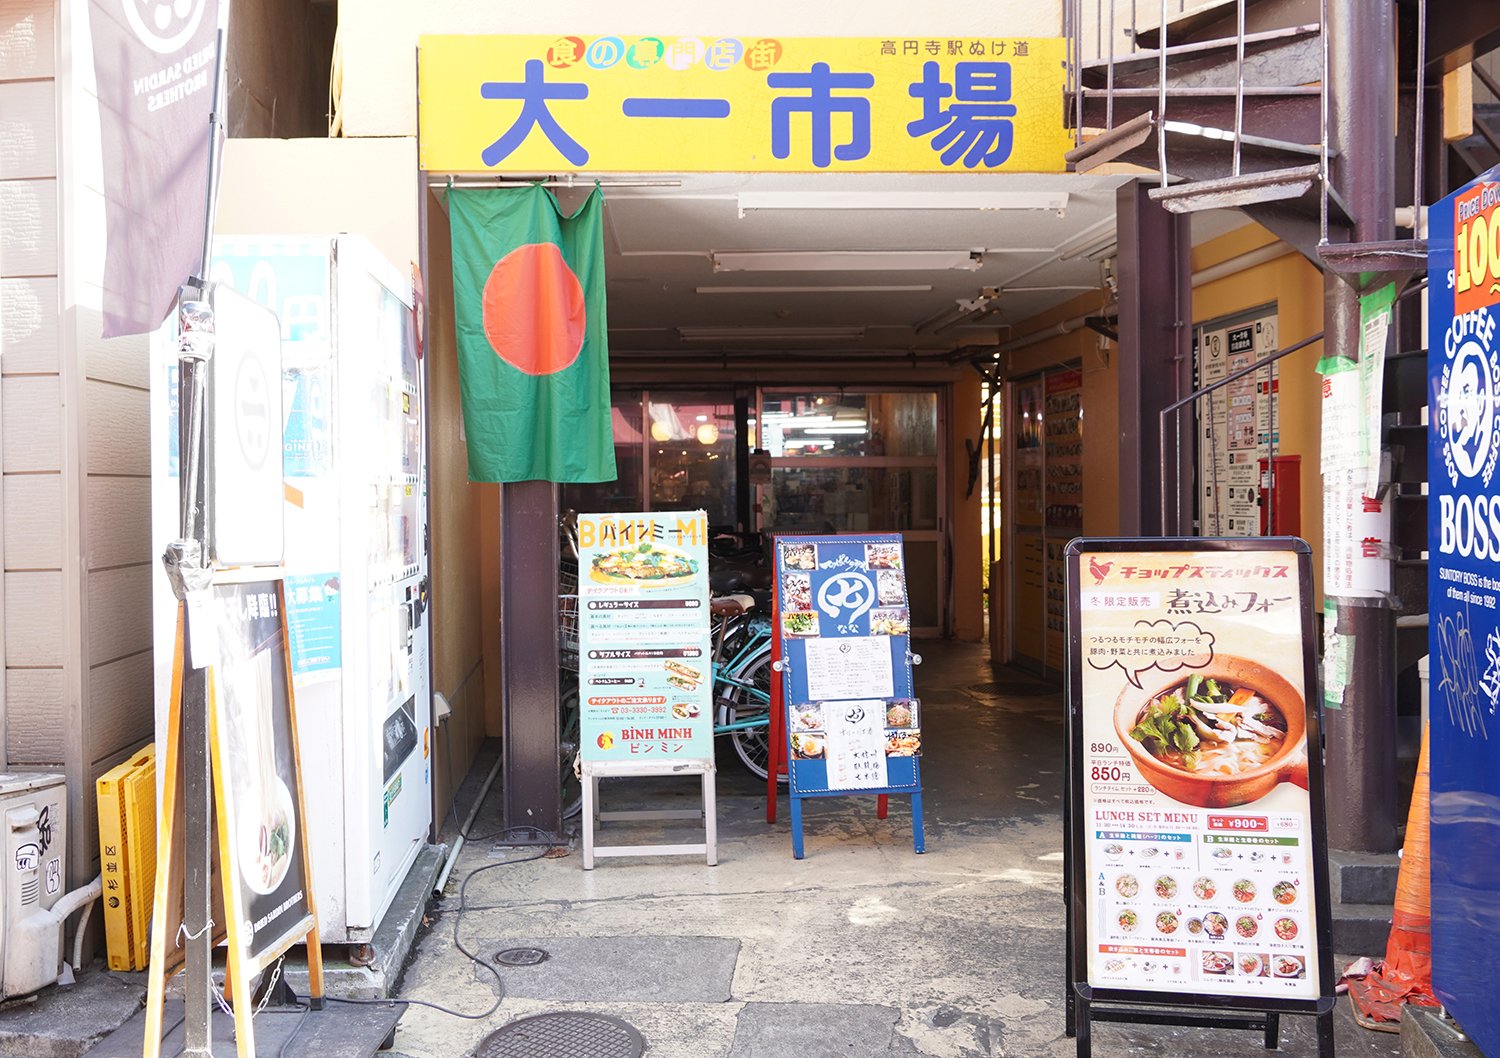 アジア料理やラーメン屋など、飲食店が多数入っている「大一市場」にある。